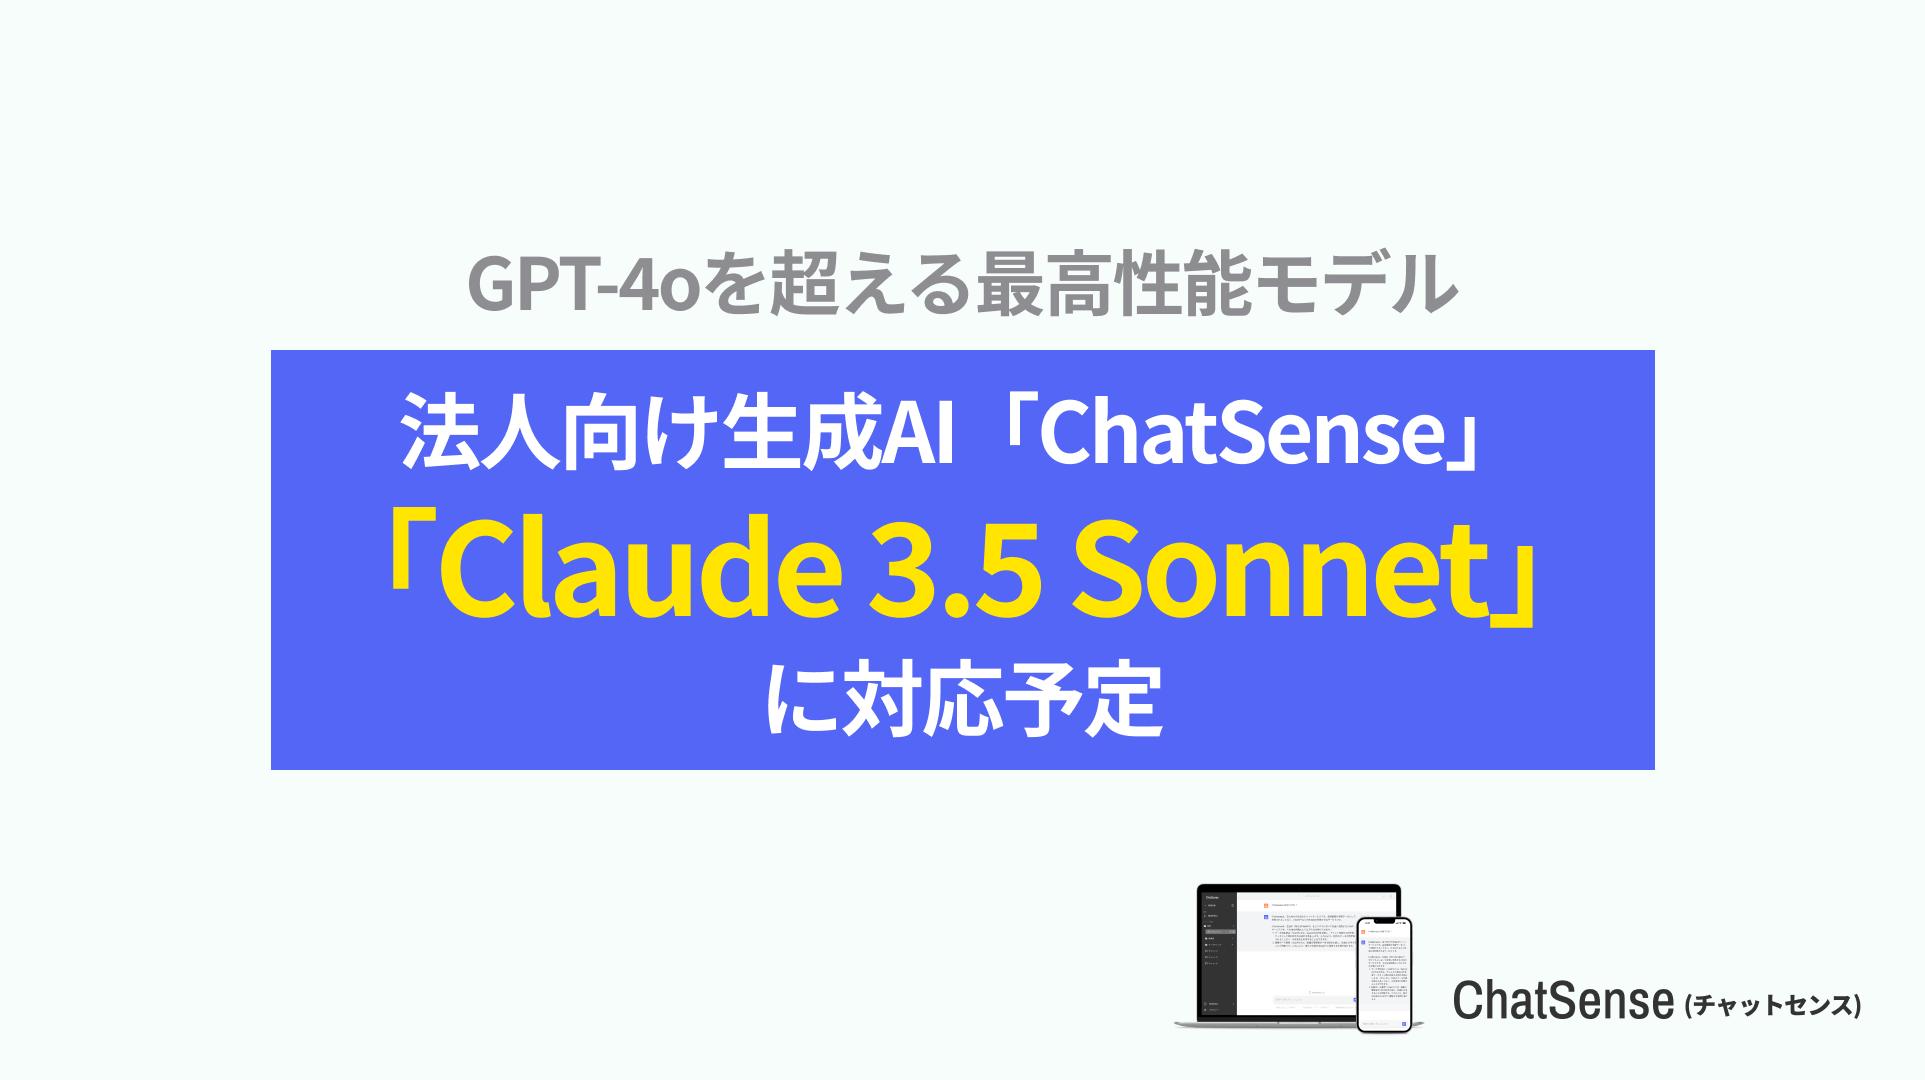 企業向けAIサービス ChatSense が Claude 3.5 Sonnet （クロード）に対応予定。Anthropic社の最新AIを安全な...